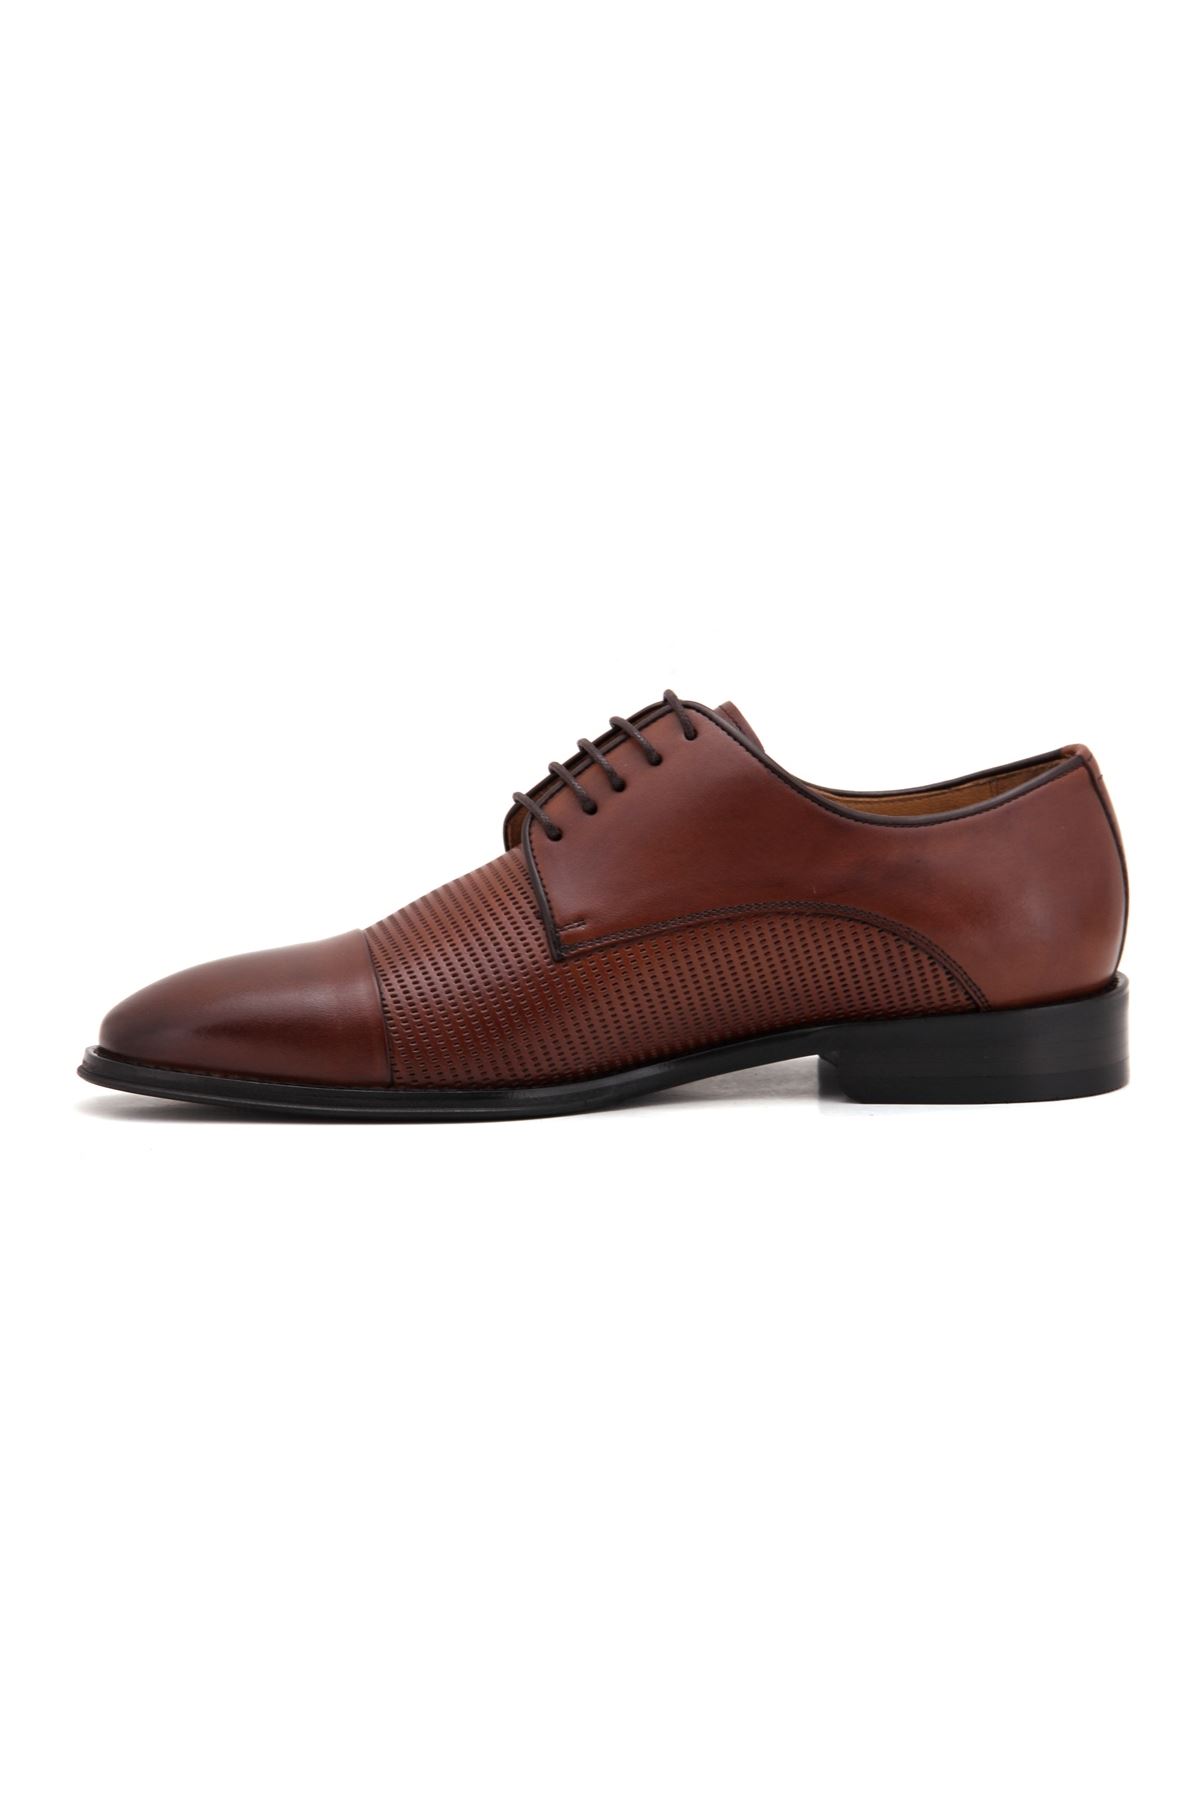 3271 Libero Klasik Erkek Ayakkabı - Taba